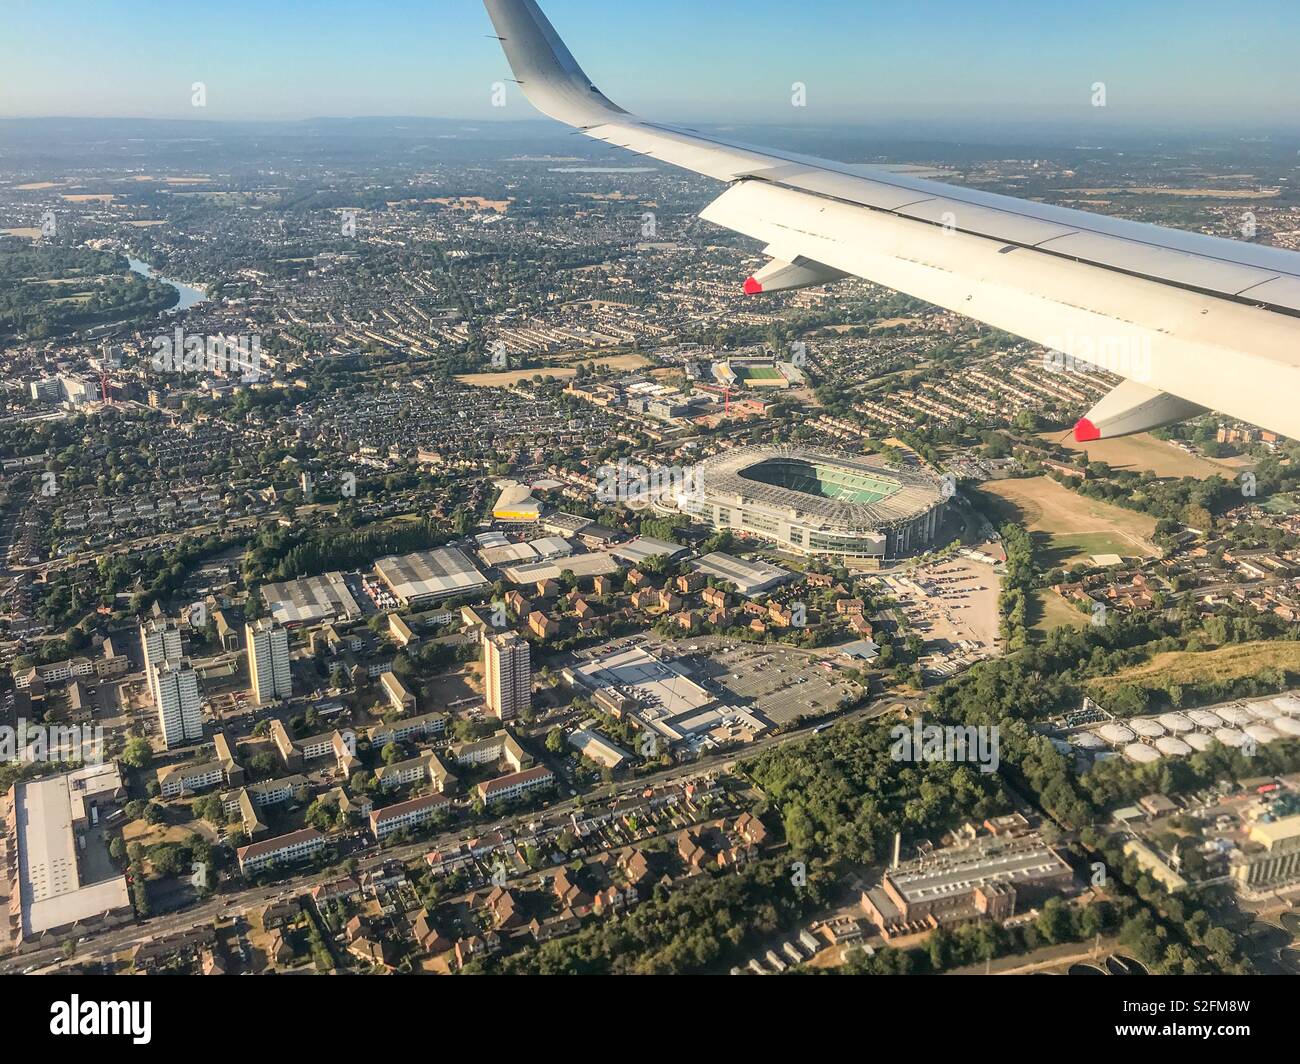 Luftaufnahme des Twickenham Rugby Stadium und das umliegende Wohngebiet von einem Flugzeug aus über am Flughafen London Heathrow zu landen. Stockfoto